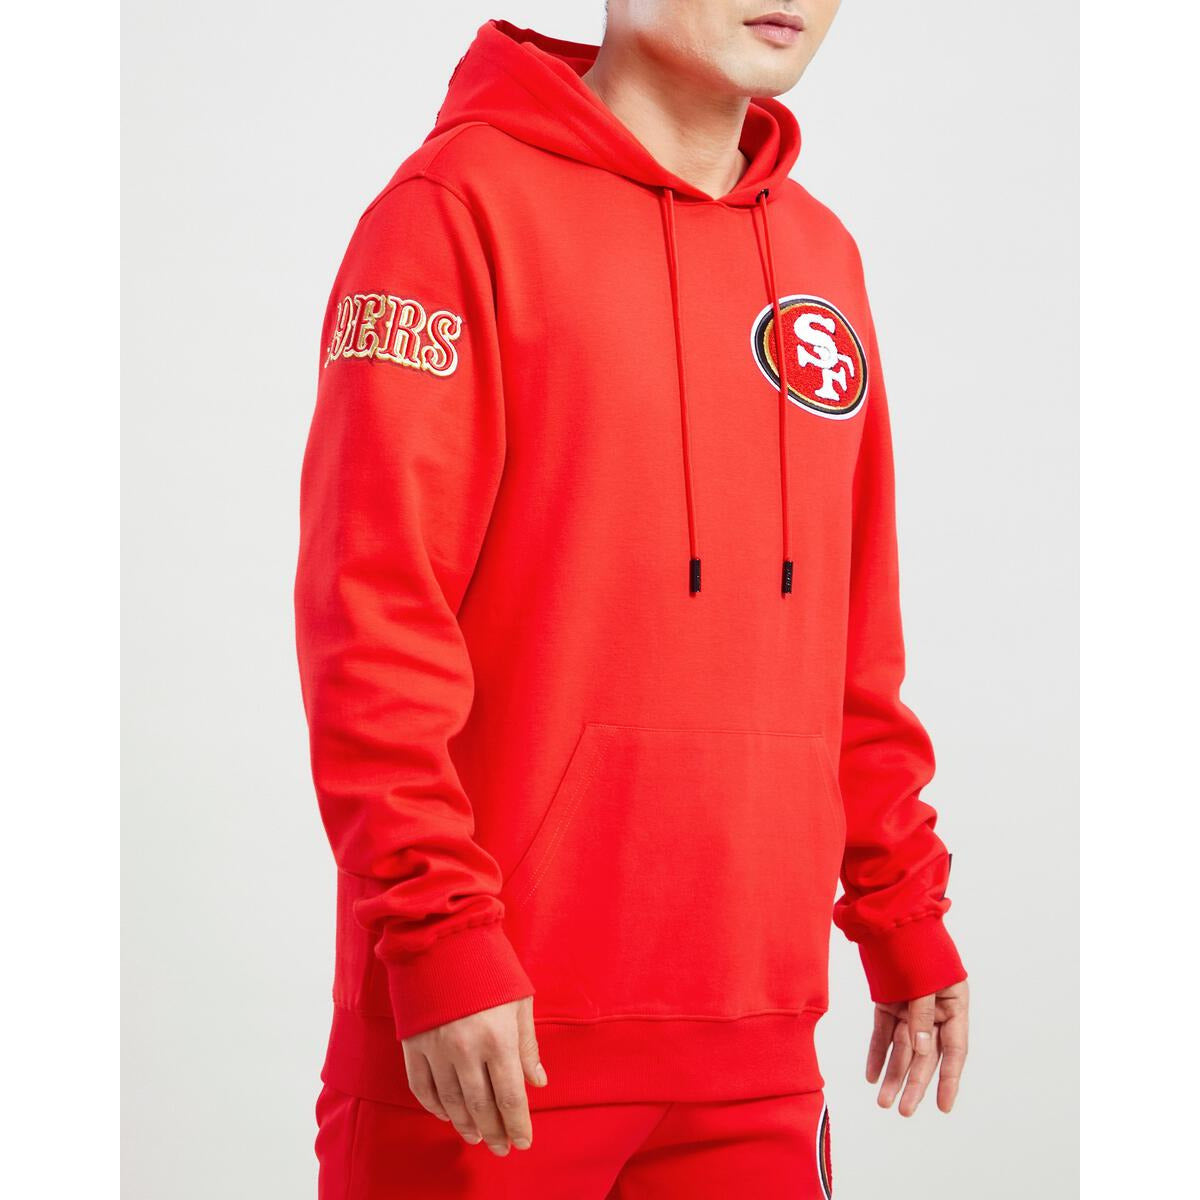 nfl 49ers hoodie